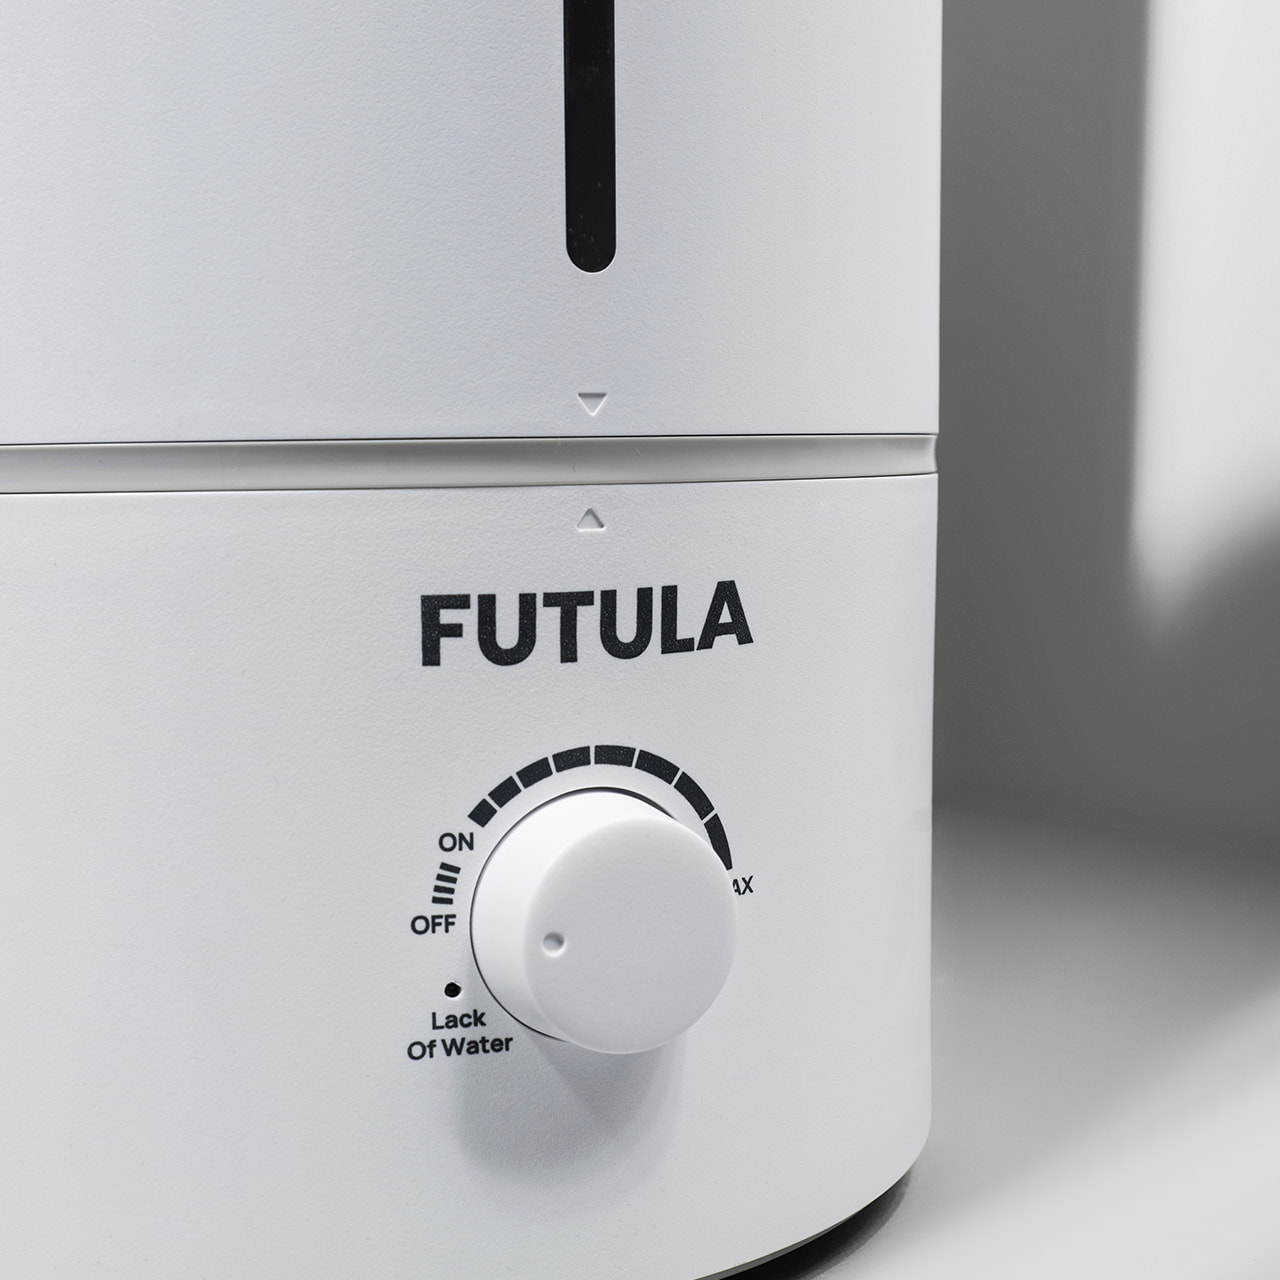 Futula Humidifier H2 крайне прост в использовании: включение и регулировка мощности осуществляются с помощью поворотного колеса на лицевой части устройства